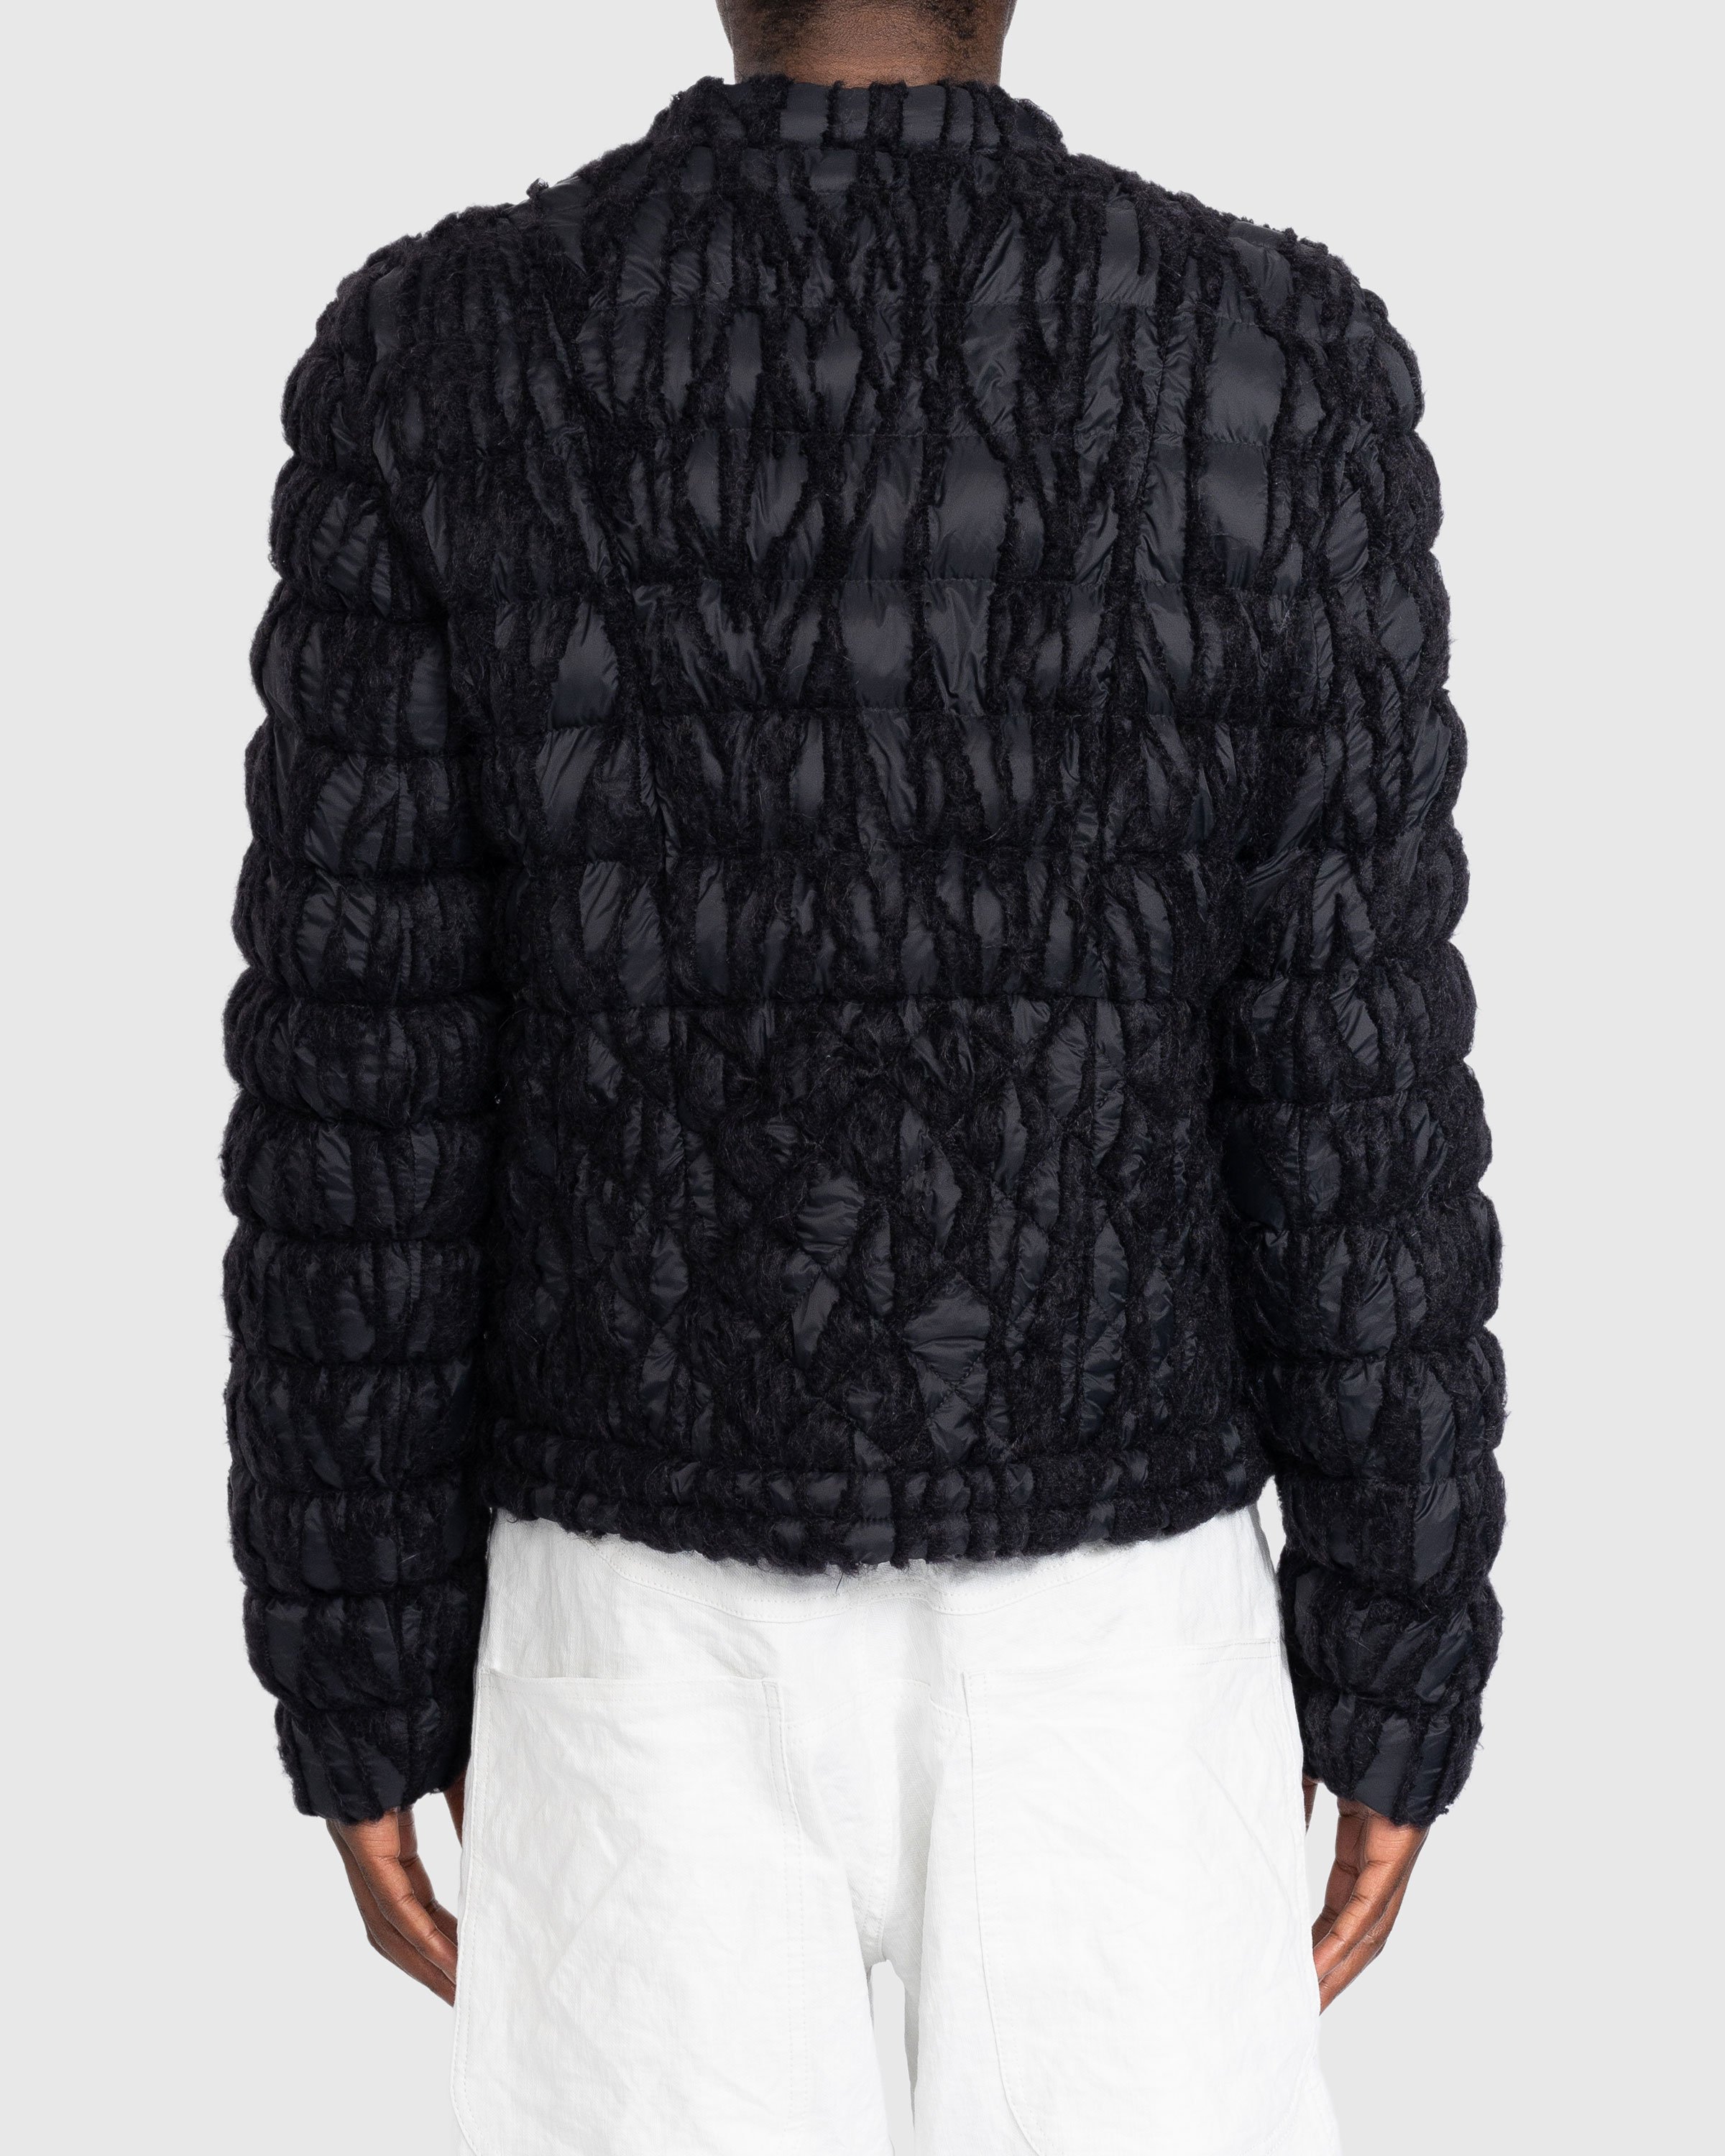 Trussardi - Embroidered Nylon Jacket Black - Clothing - Black - Image 4